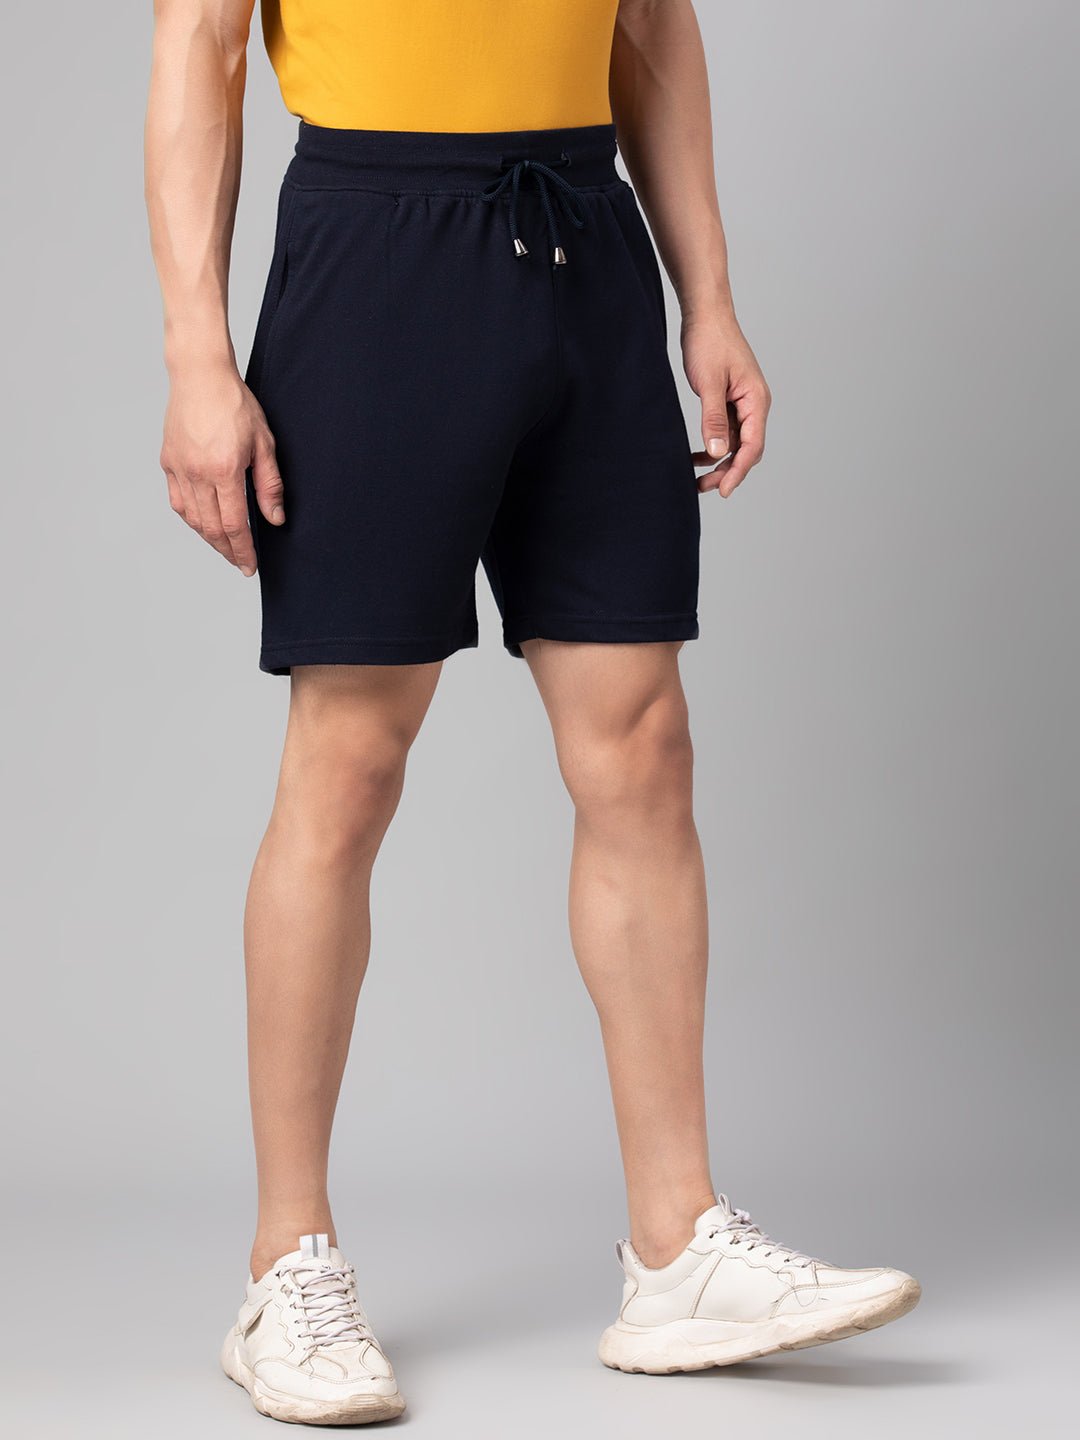 Navy Blue Shorts - clubyork